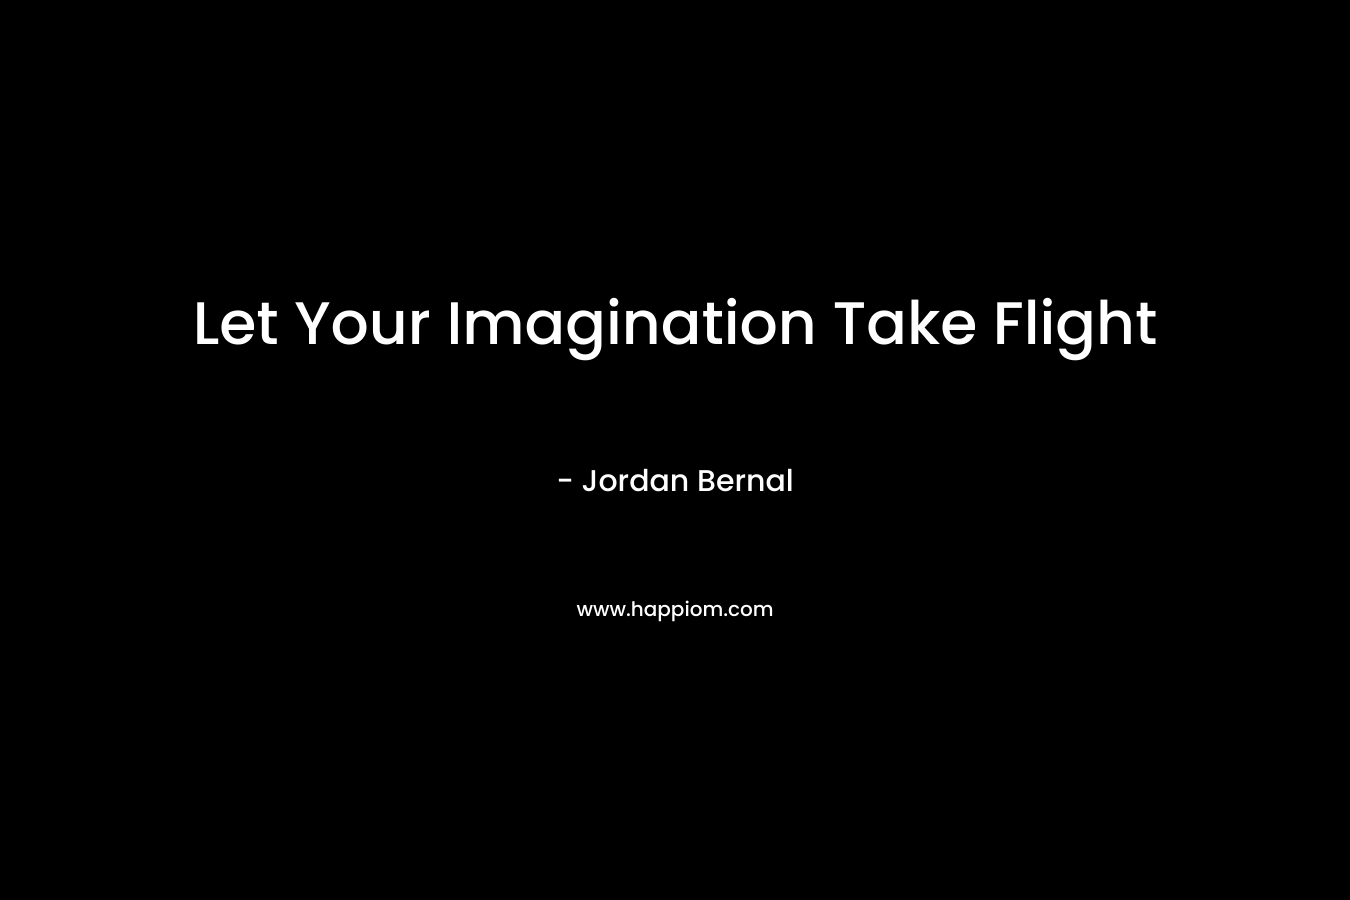 Let Your Imagination Take Flight